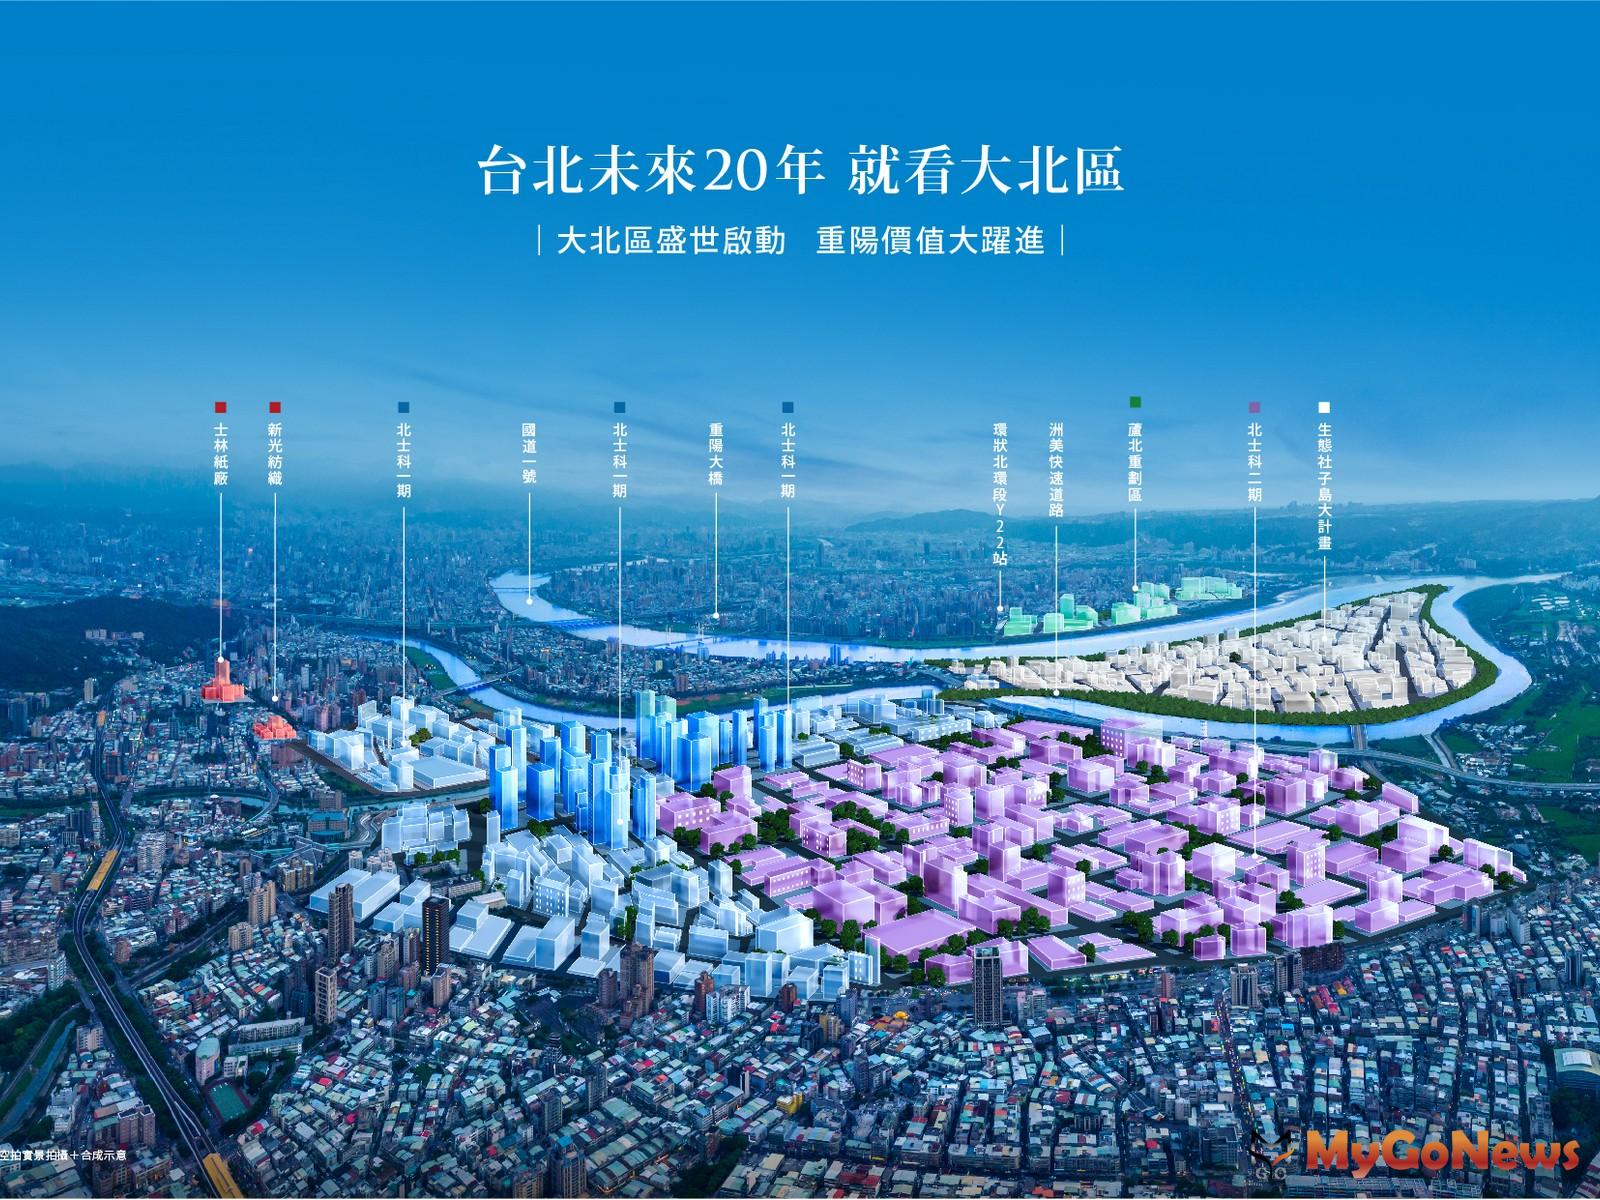 台北2050願景，「大北區」建設受矚目